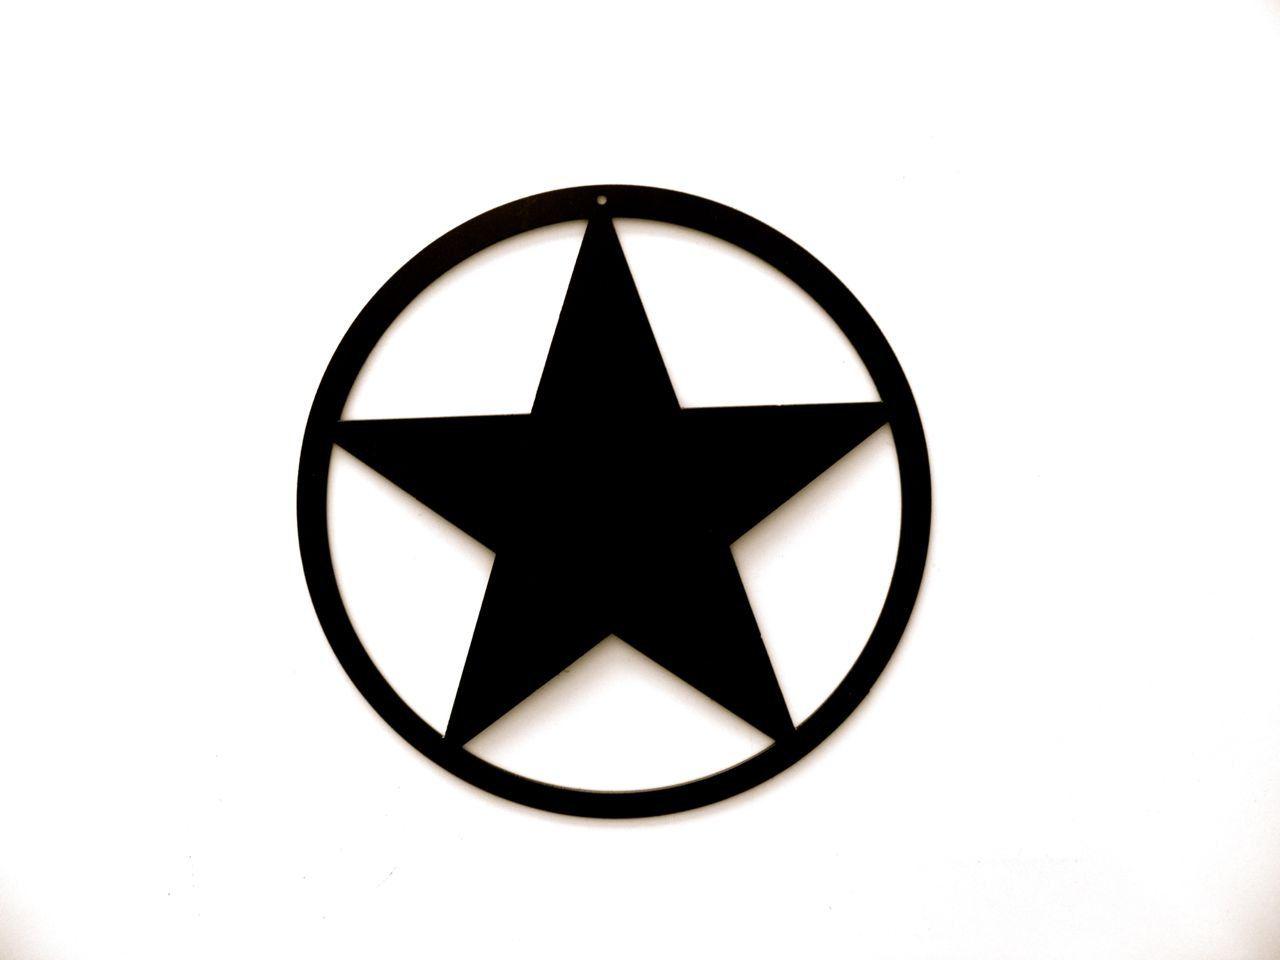 Who Has a Star Circle Logo - Black star in circle Logos